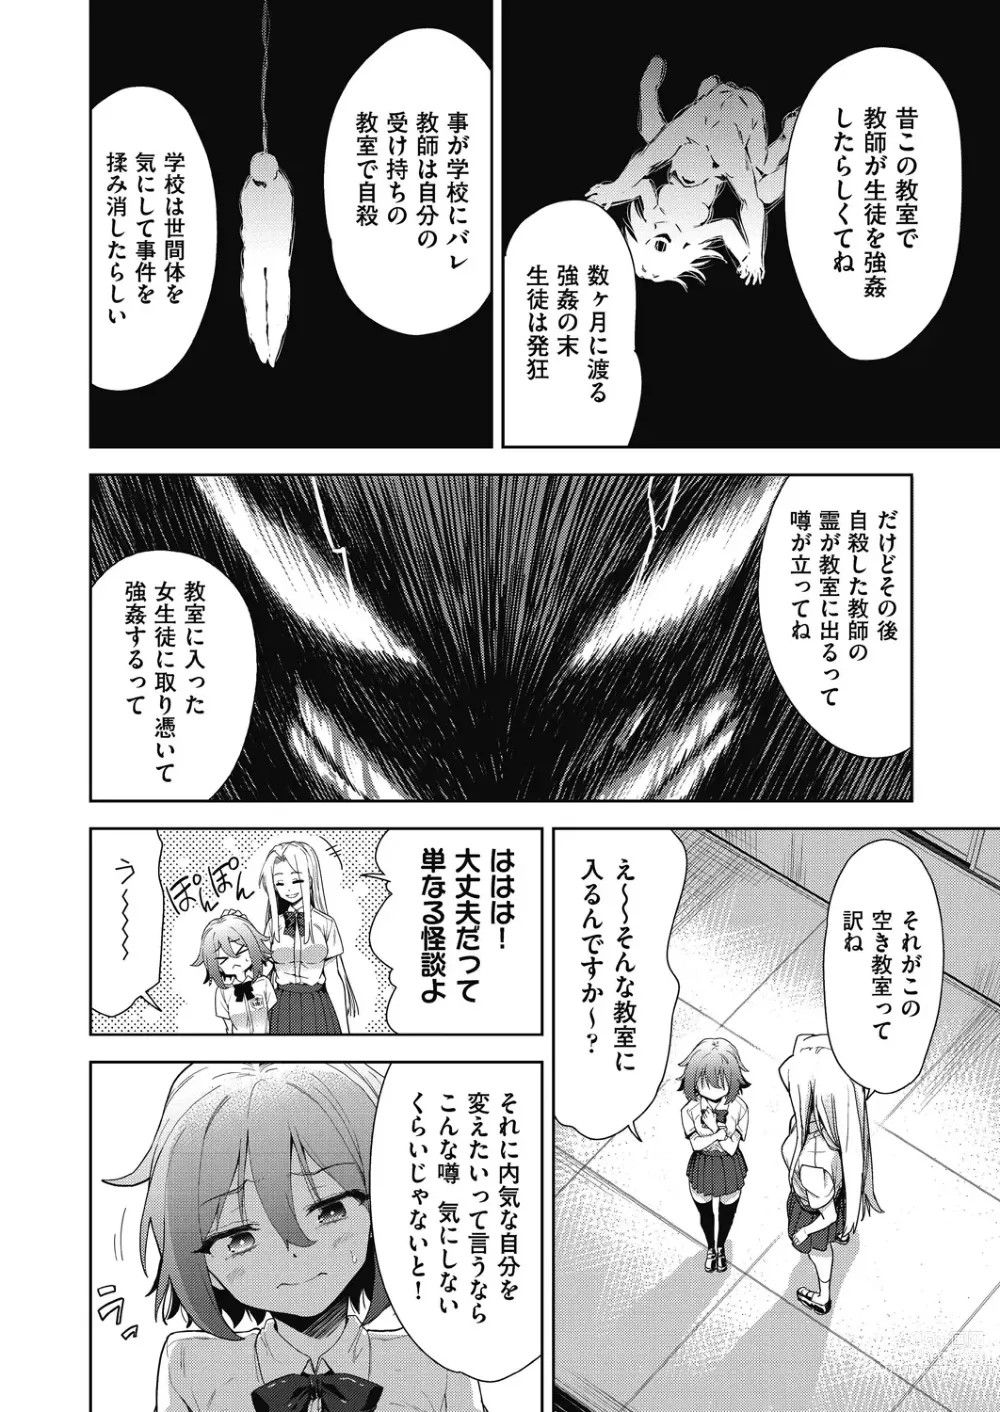 Page 6 of manga Shikiyoku no Kyoushitsu to Ikenie Shoujo